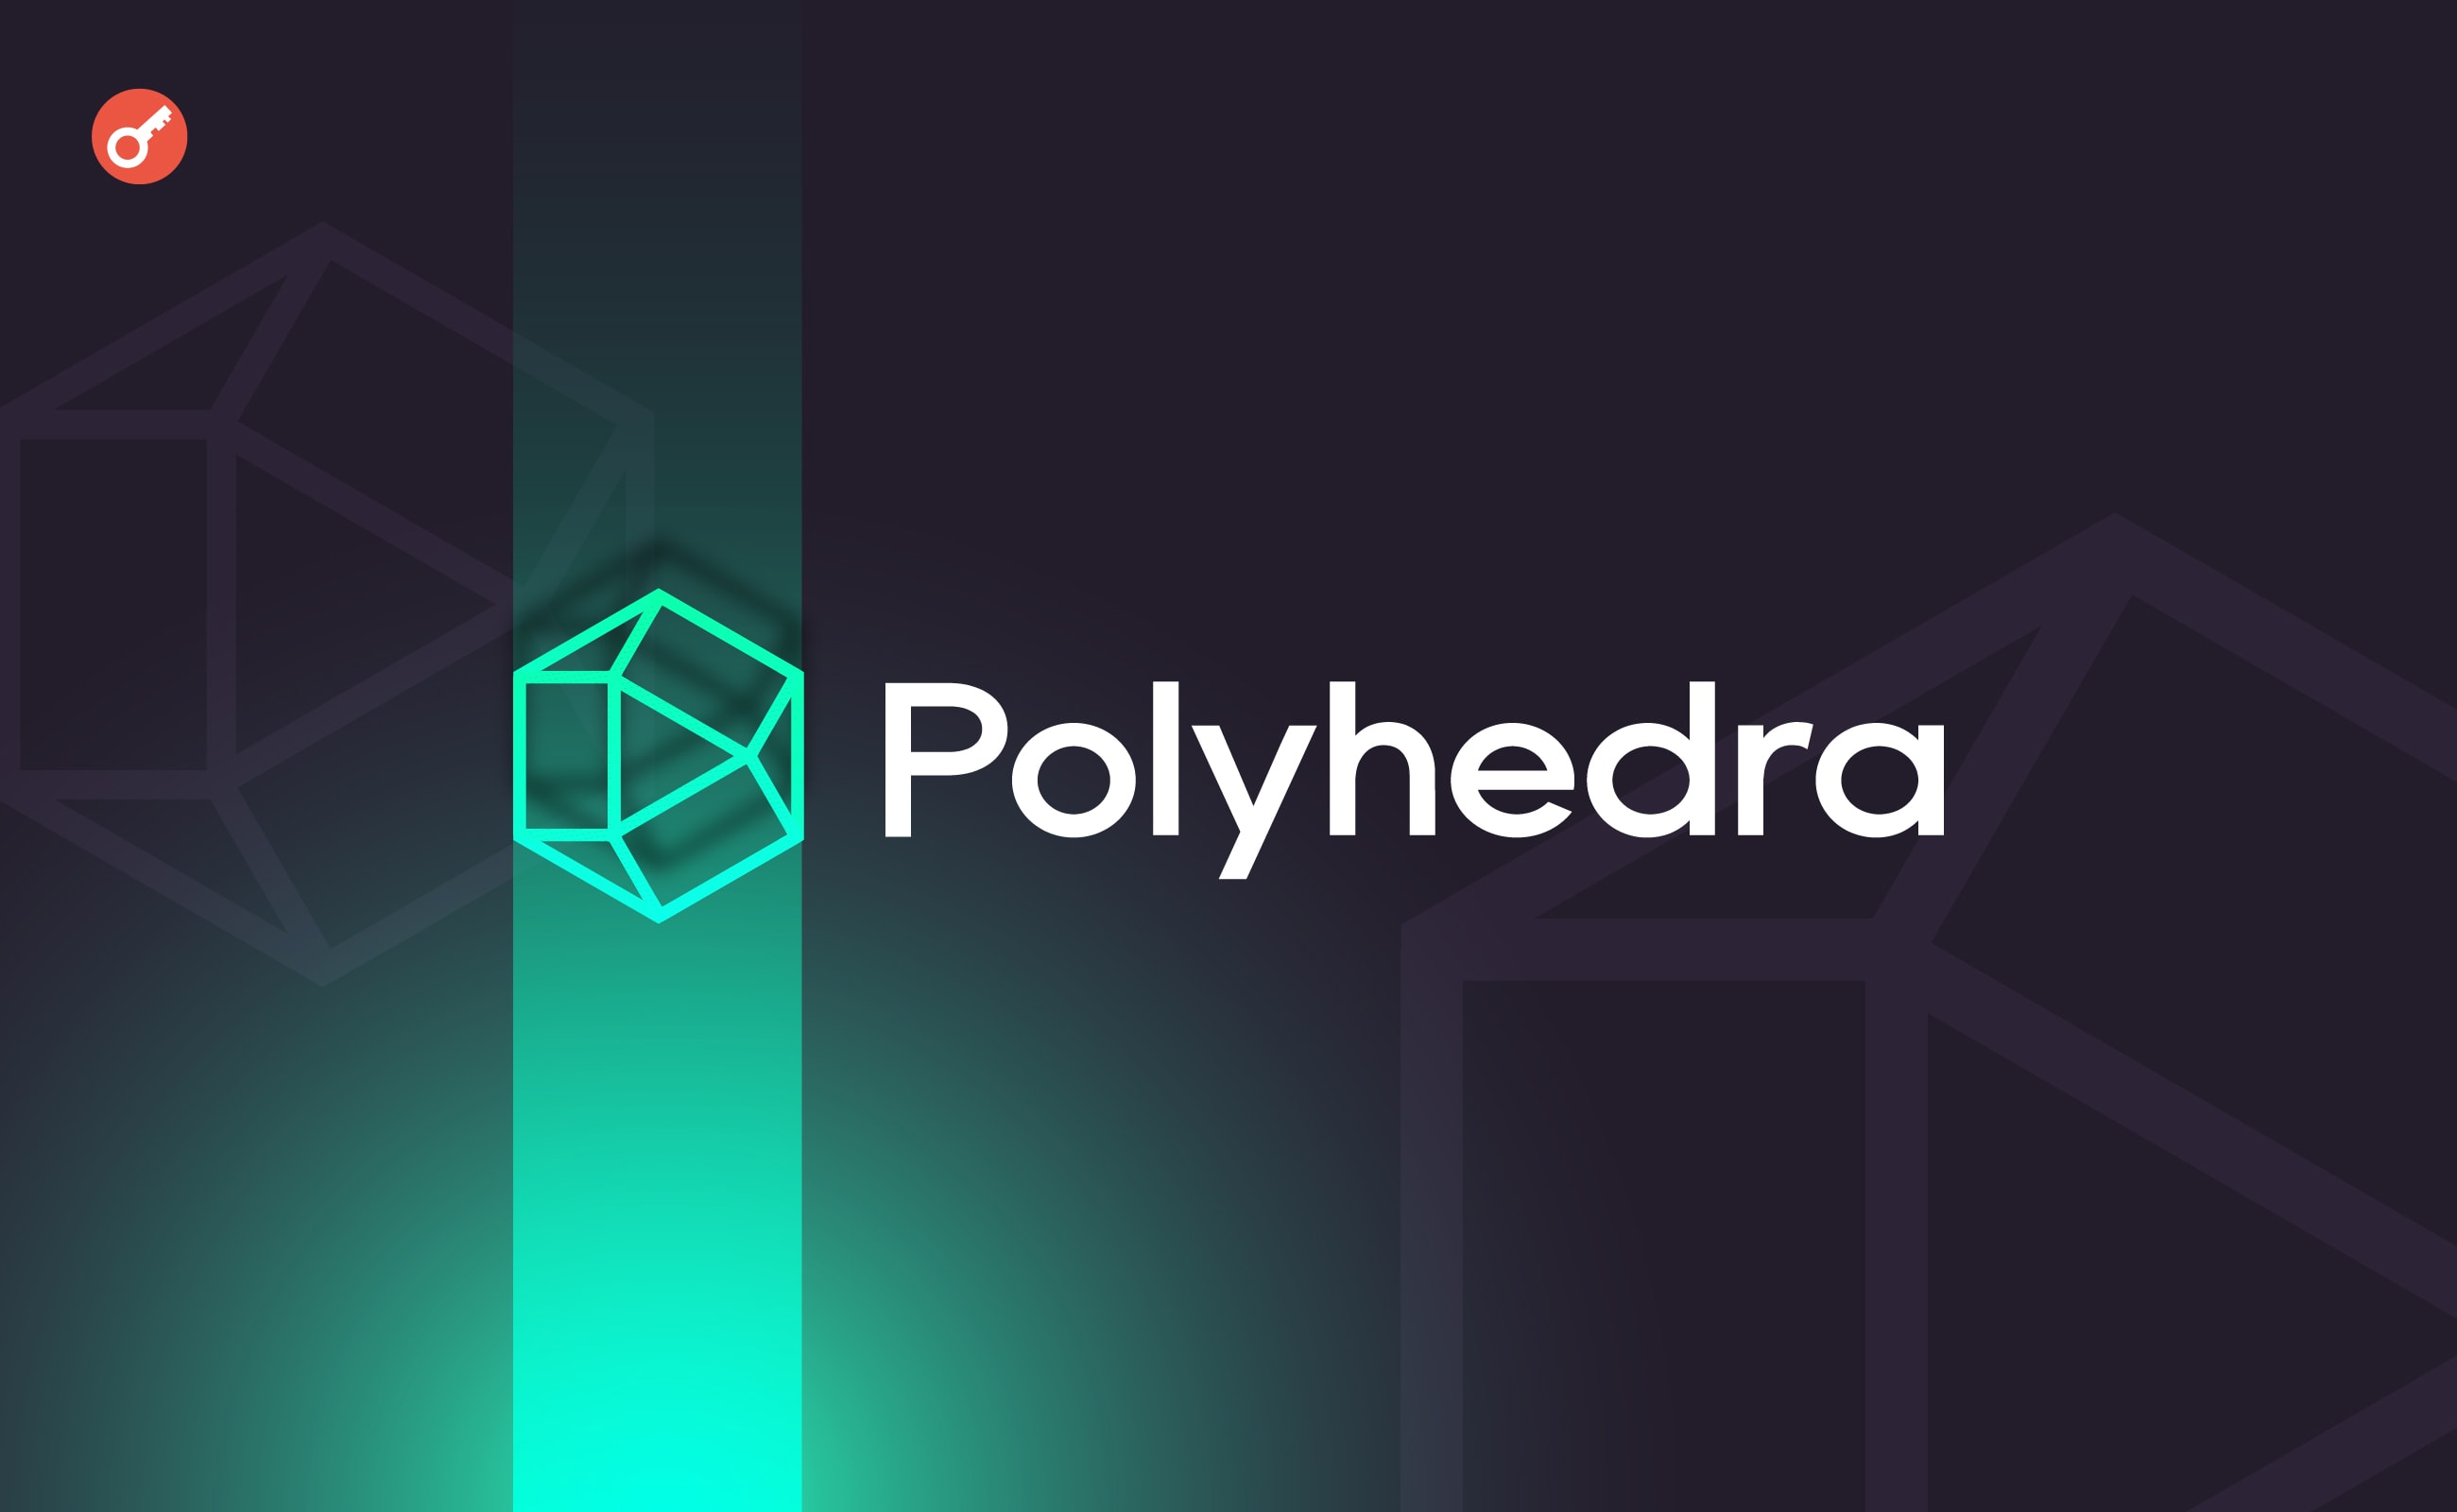 Polyhedra Network привлекла $20 млн инвестиций при оценке в $1 млрд. Заглавный коллаж новости.